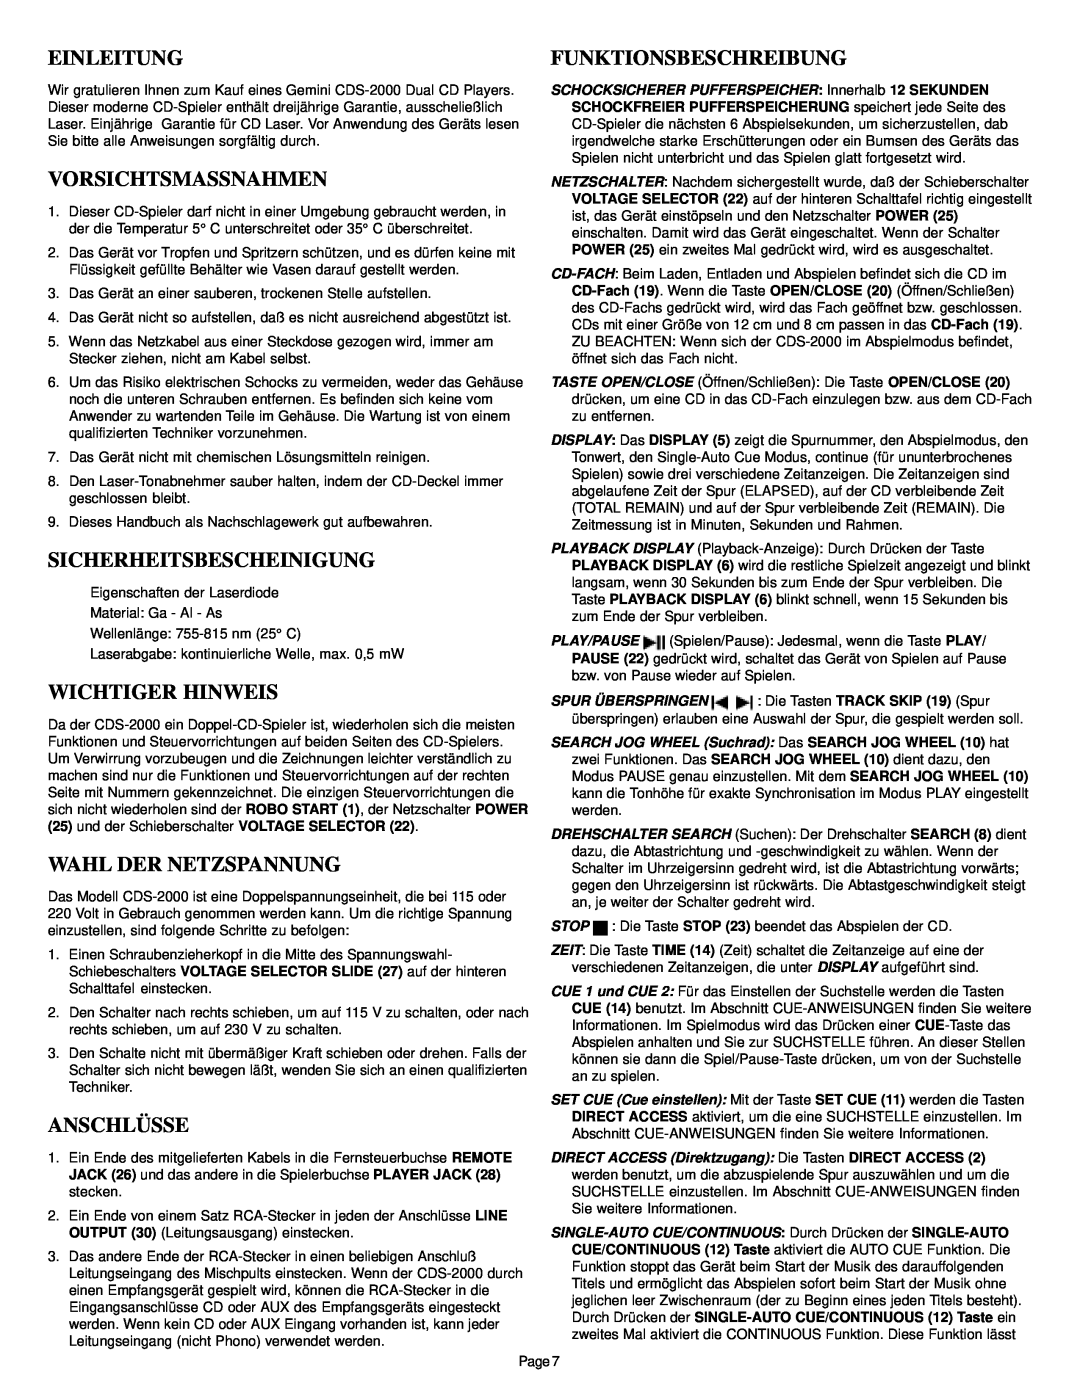 Gemini CDS-2000 manual Einleitung, Funktionsbeschreibung, Vorsichtsmassnahmen, Sicherheitsbescheinigung, Wichtiger Hinweis 